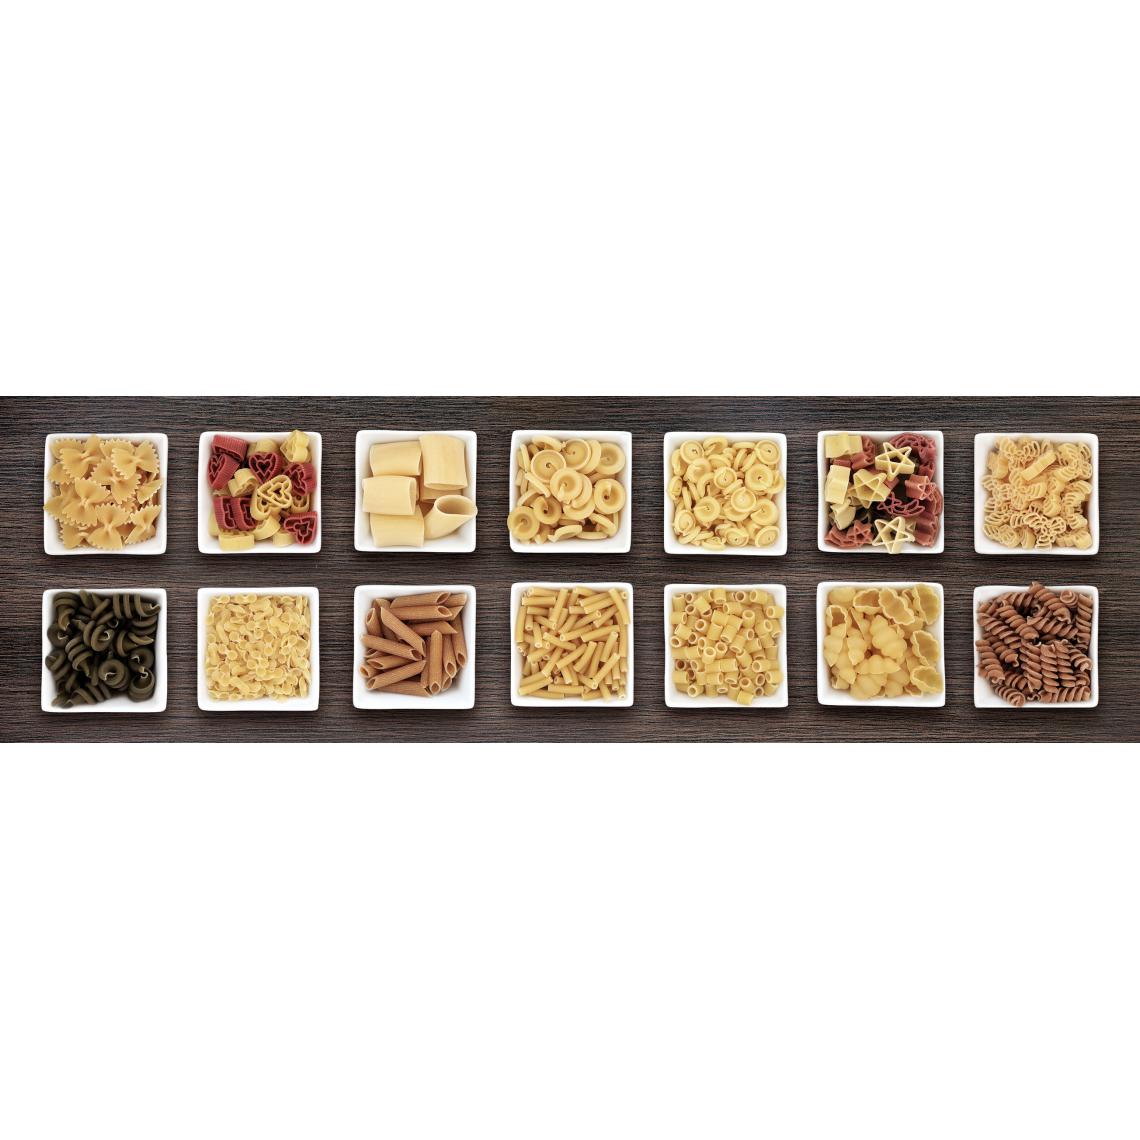 Alter - Tapis de cuisine, 100% Made in Italy, Tapis antitache avec impression numérique, Tapis antidérapant et lavable, Modèle Erbogacen, 120x52 cm - Tapis